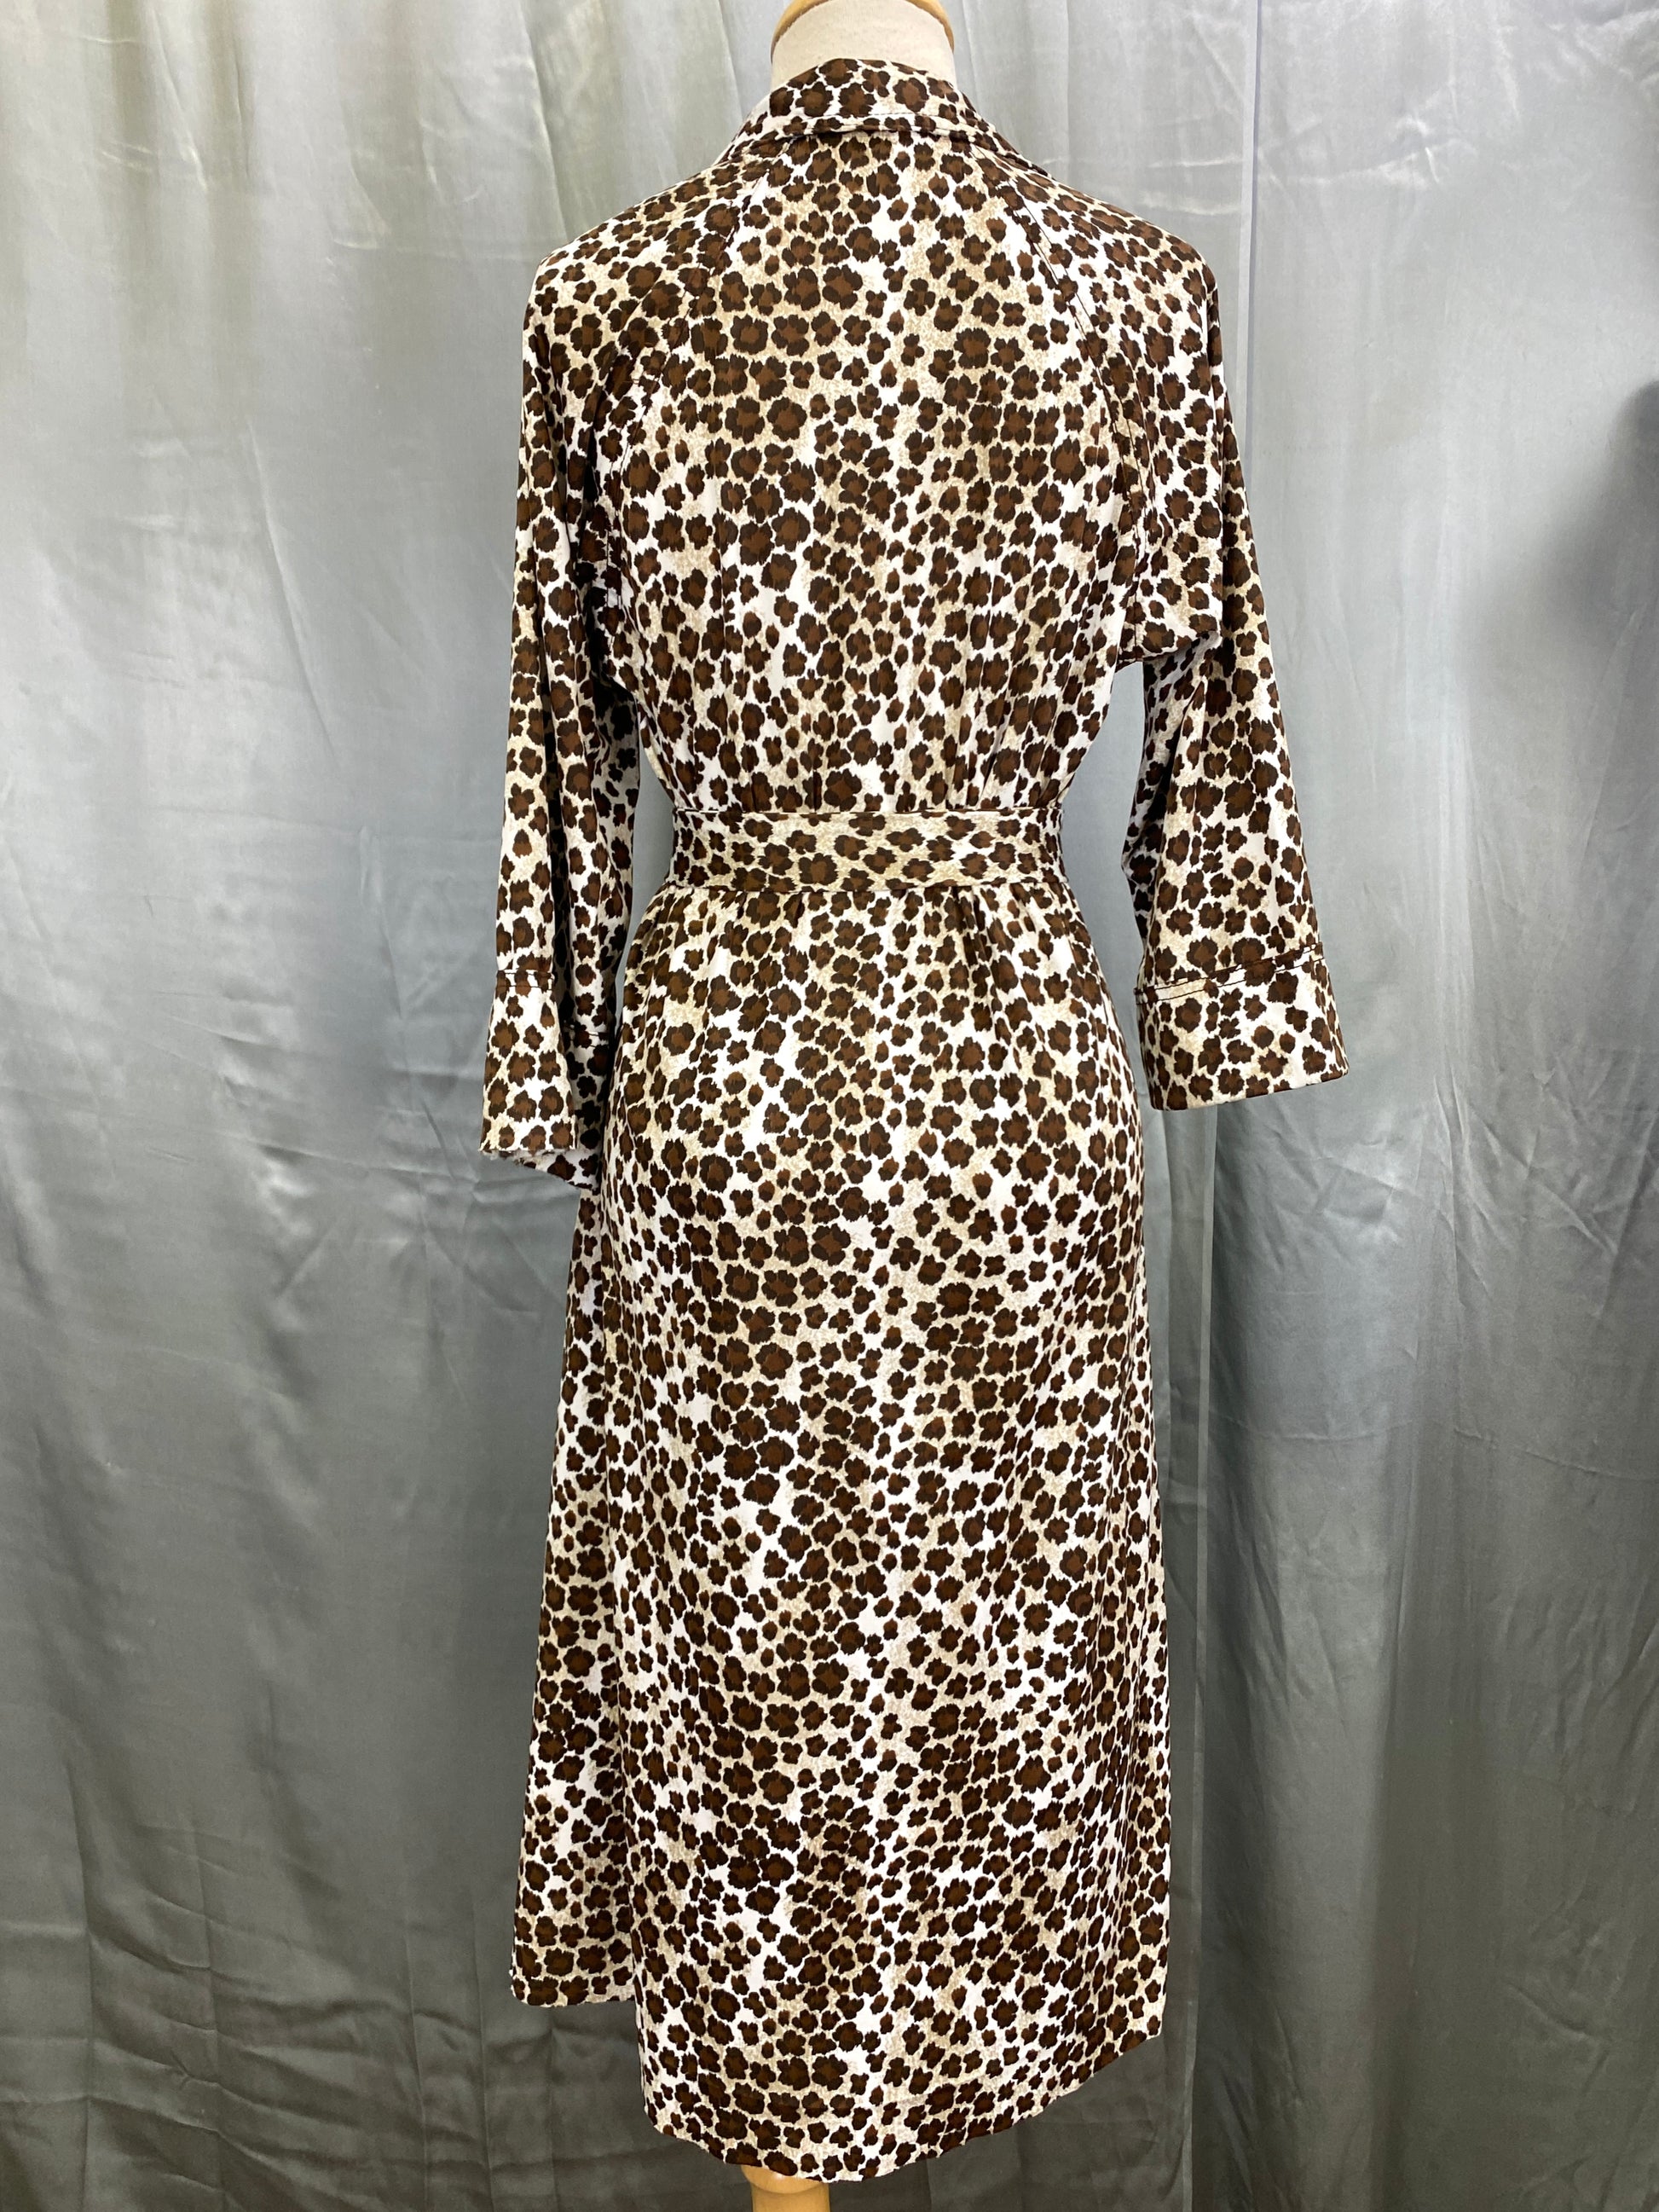 Vintage 1970s Leopard Print Poly Dress with Belt, M-L